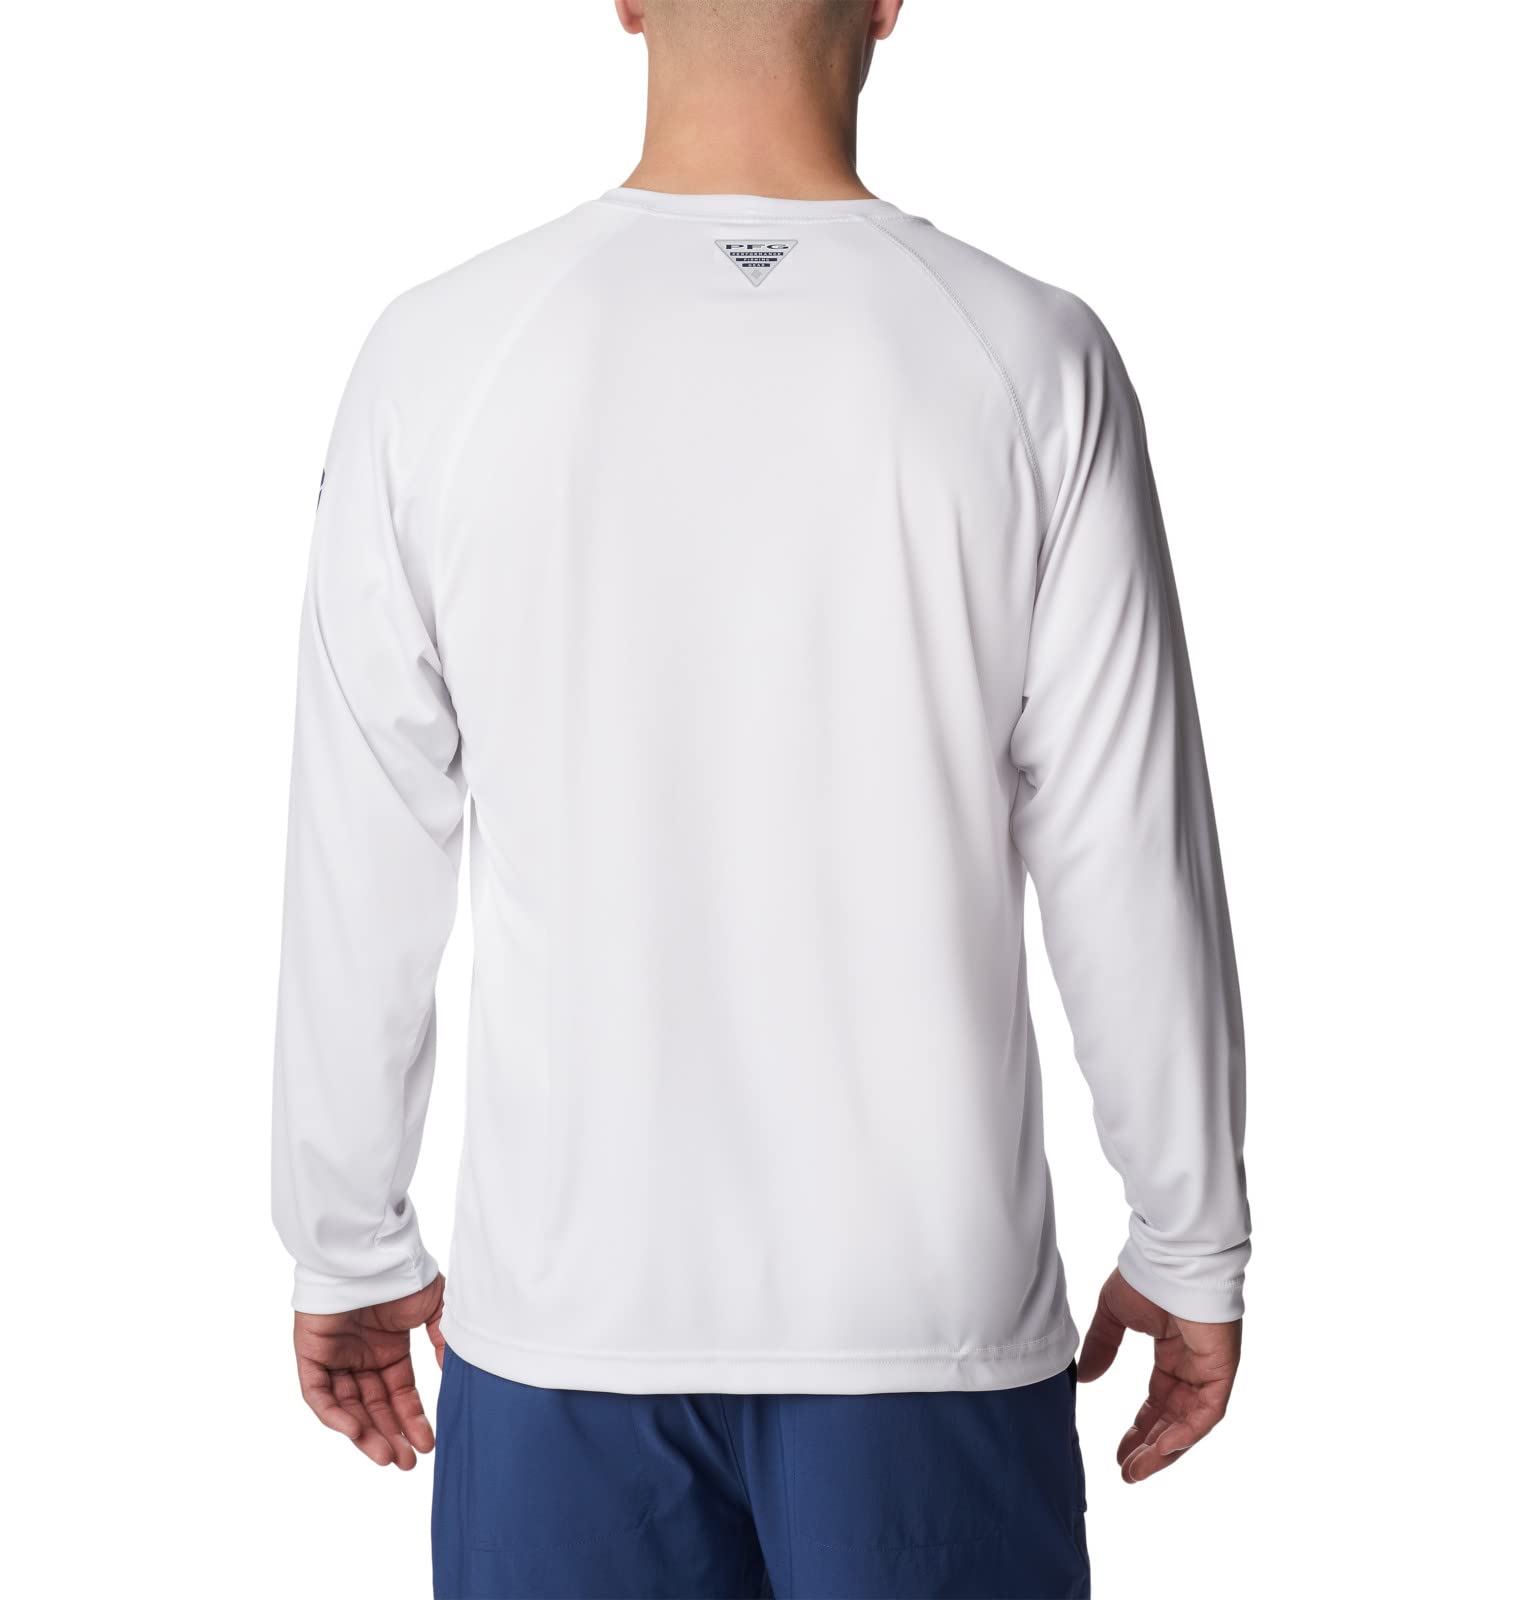 Columbia Men's Terminal Tackle Long Sleeve Shirt, White/Nightshade Logo, Large